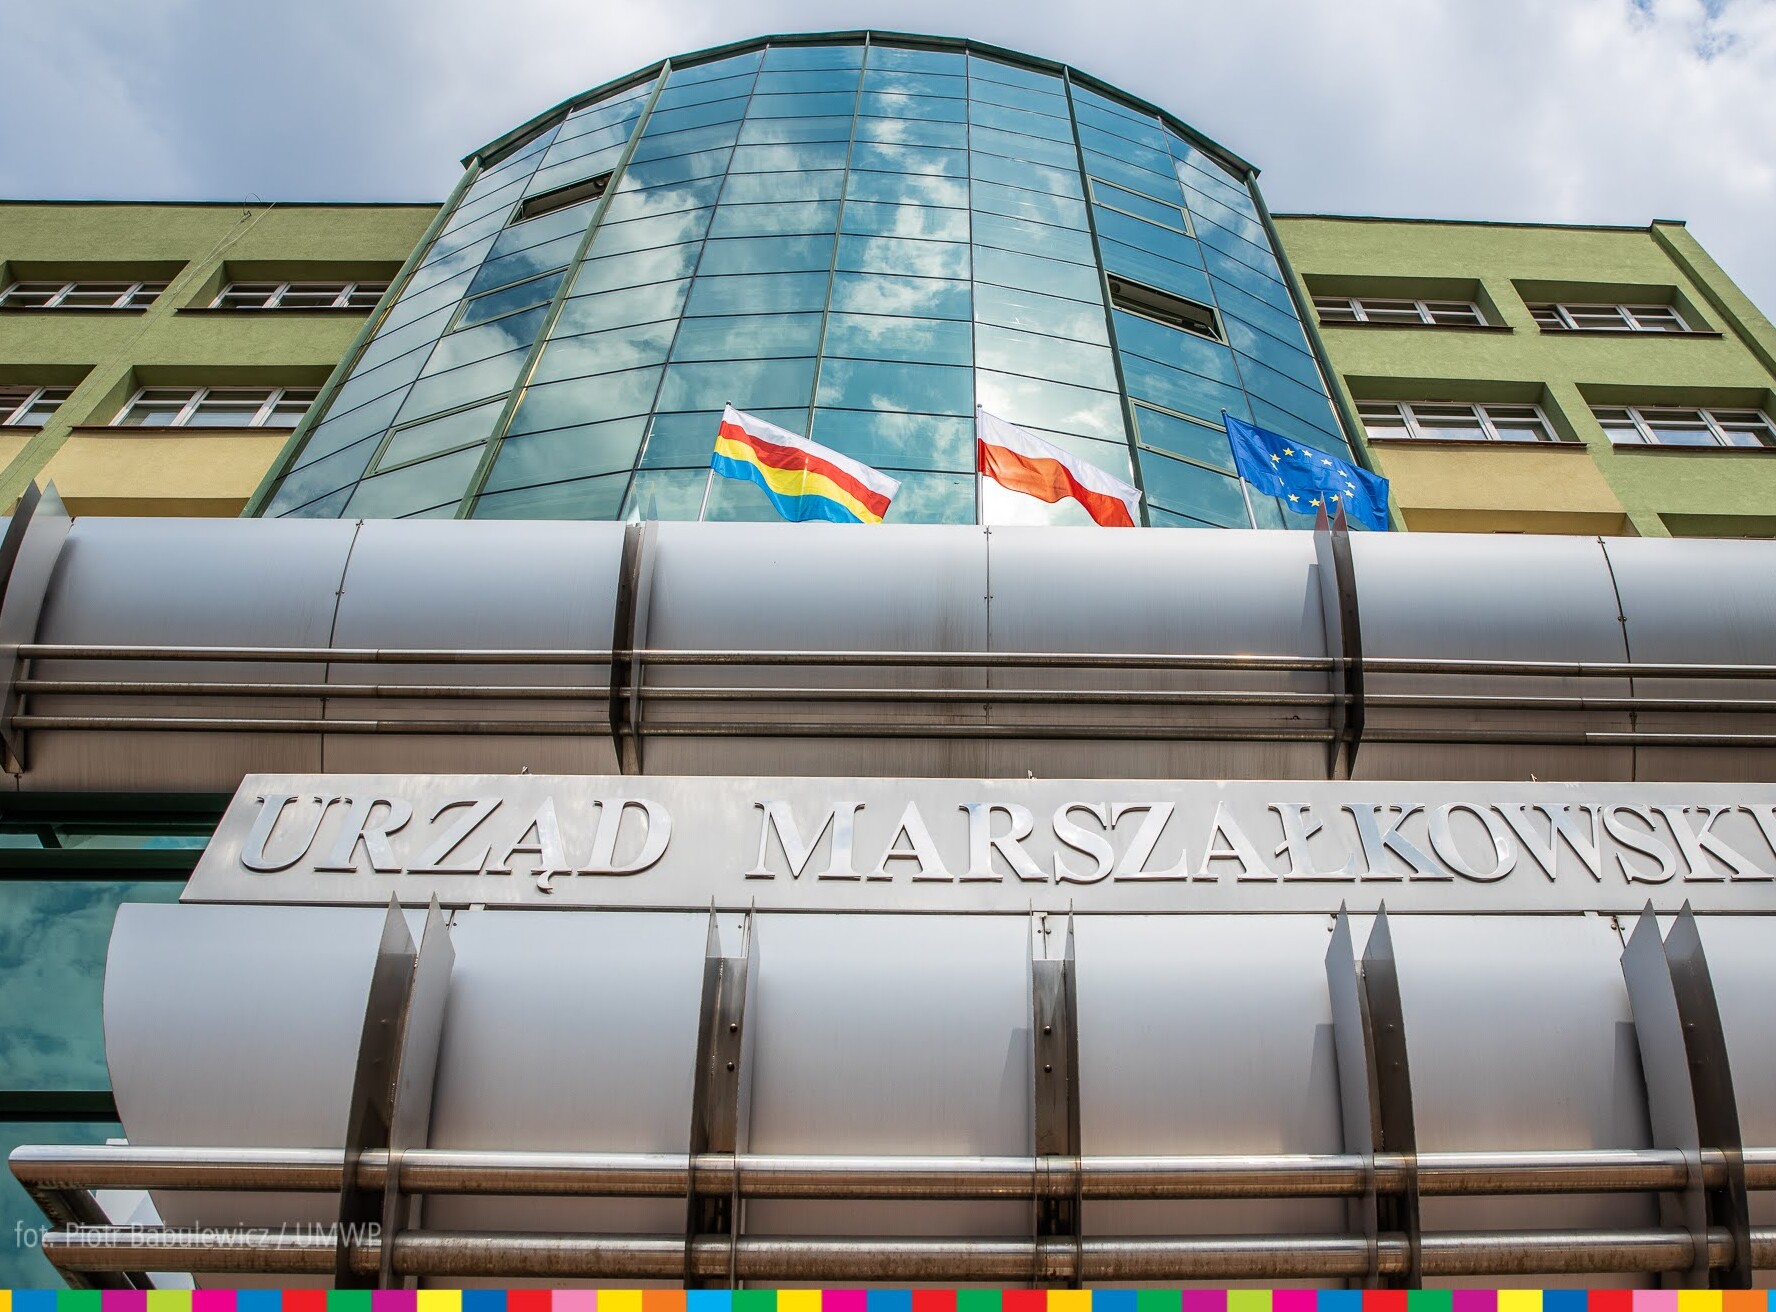 Fasada urzędu marszałkowskiego. Widoczne powiewające flagi